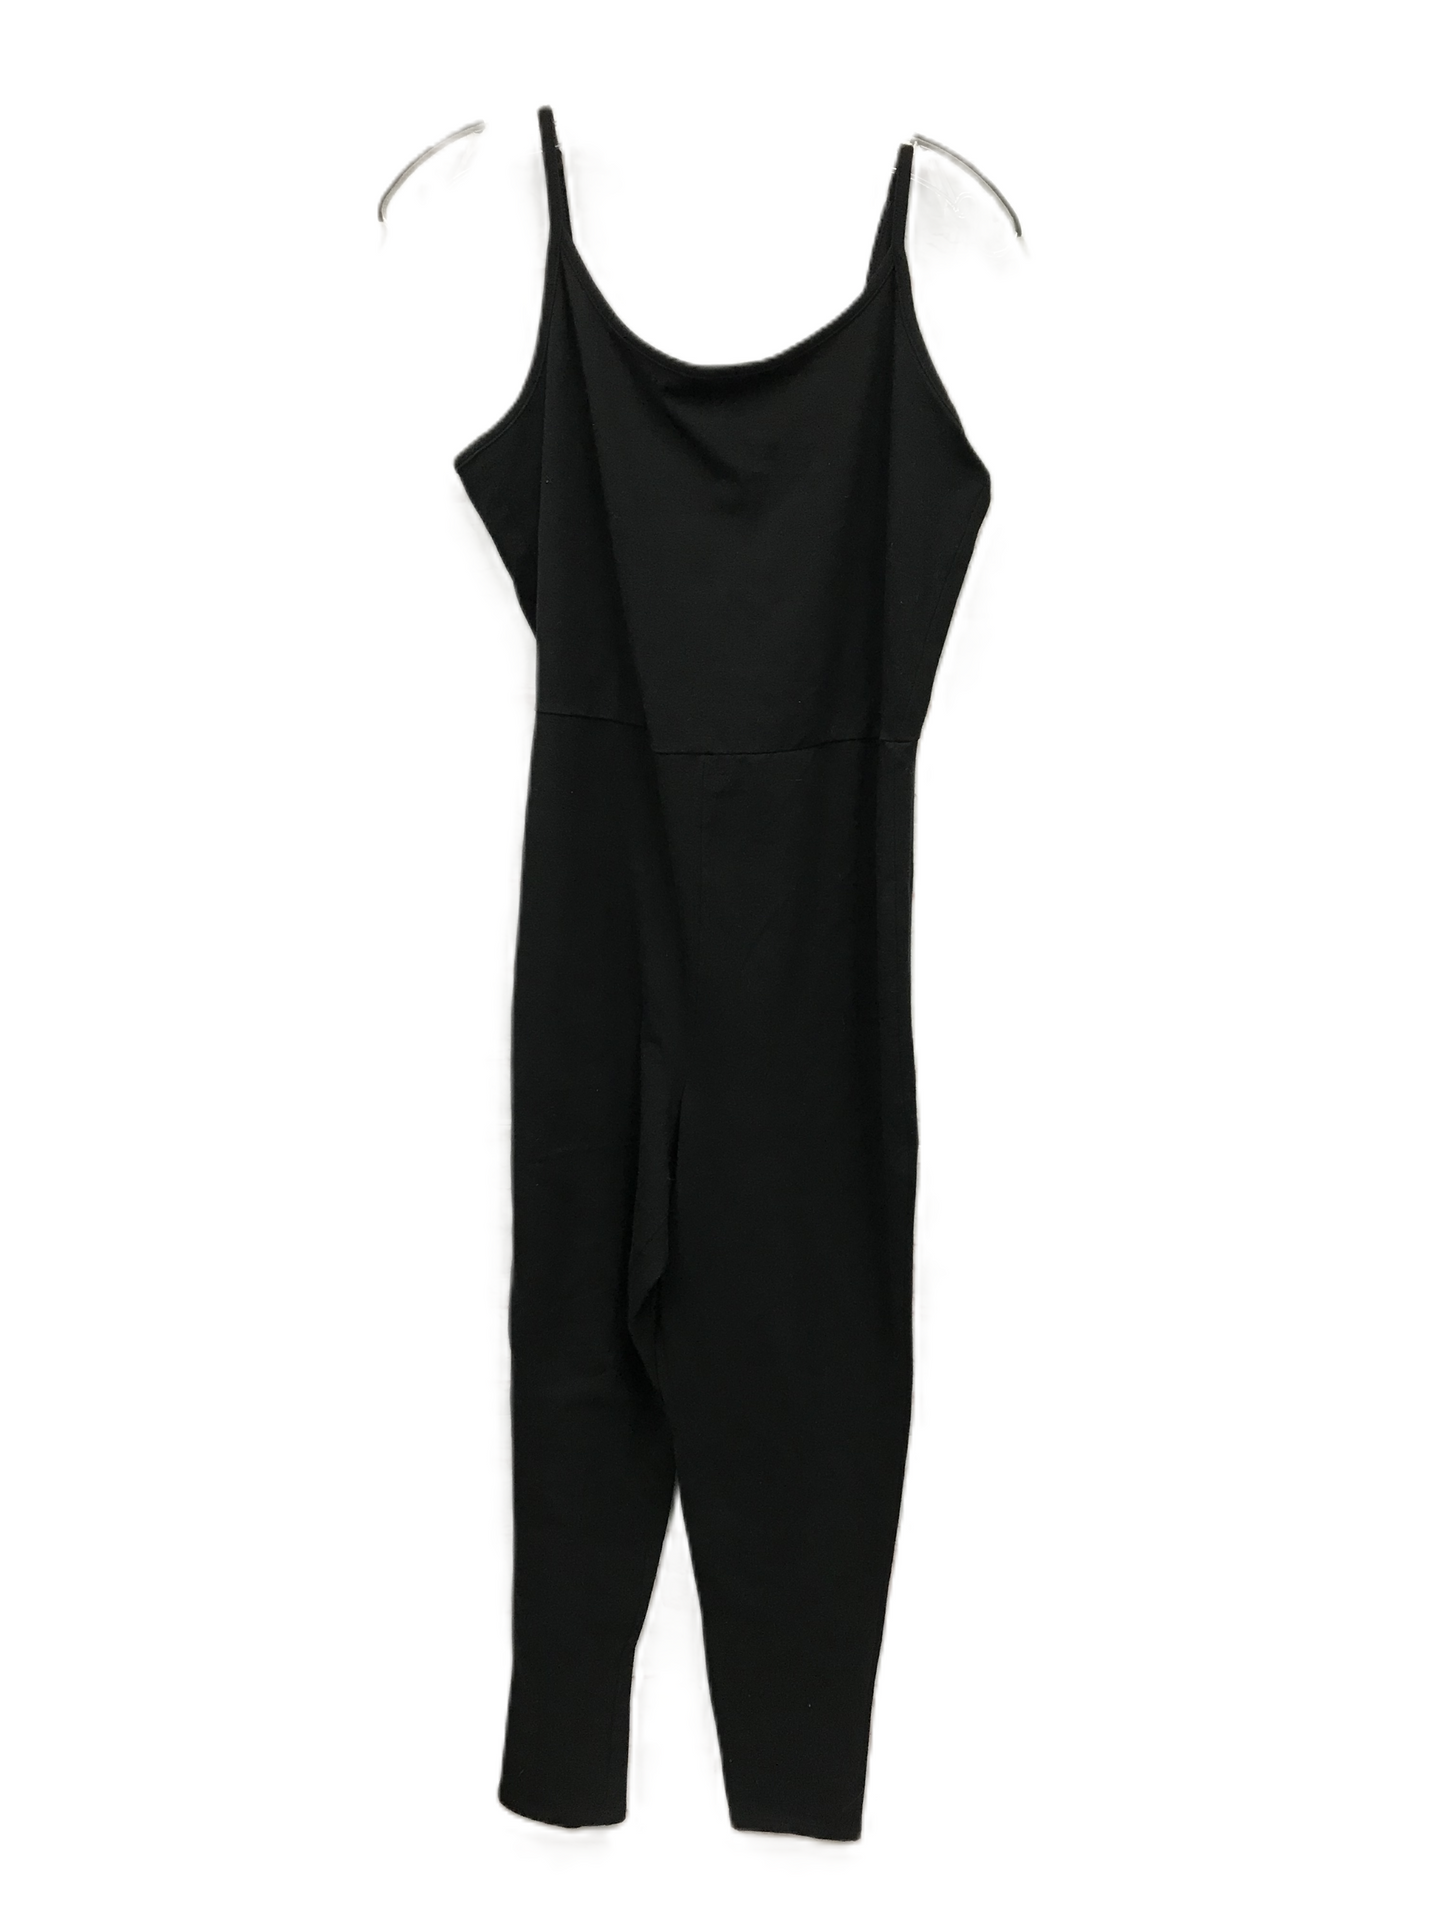 Black Jumpsuit By Torrid, Size: 2x